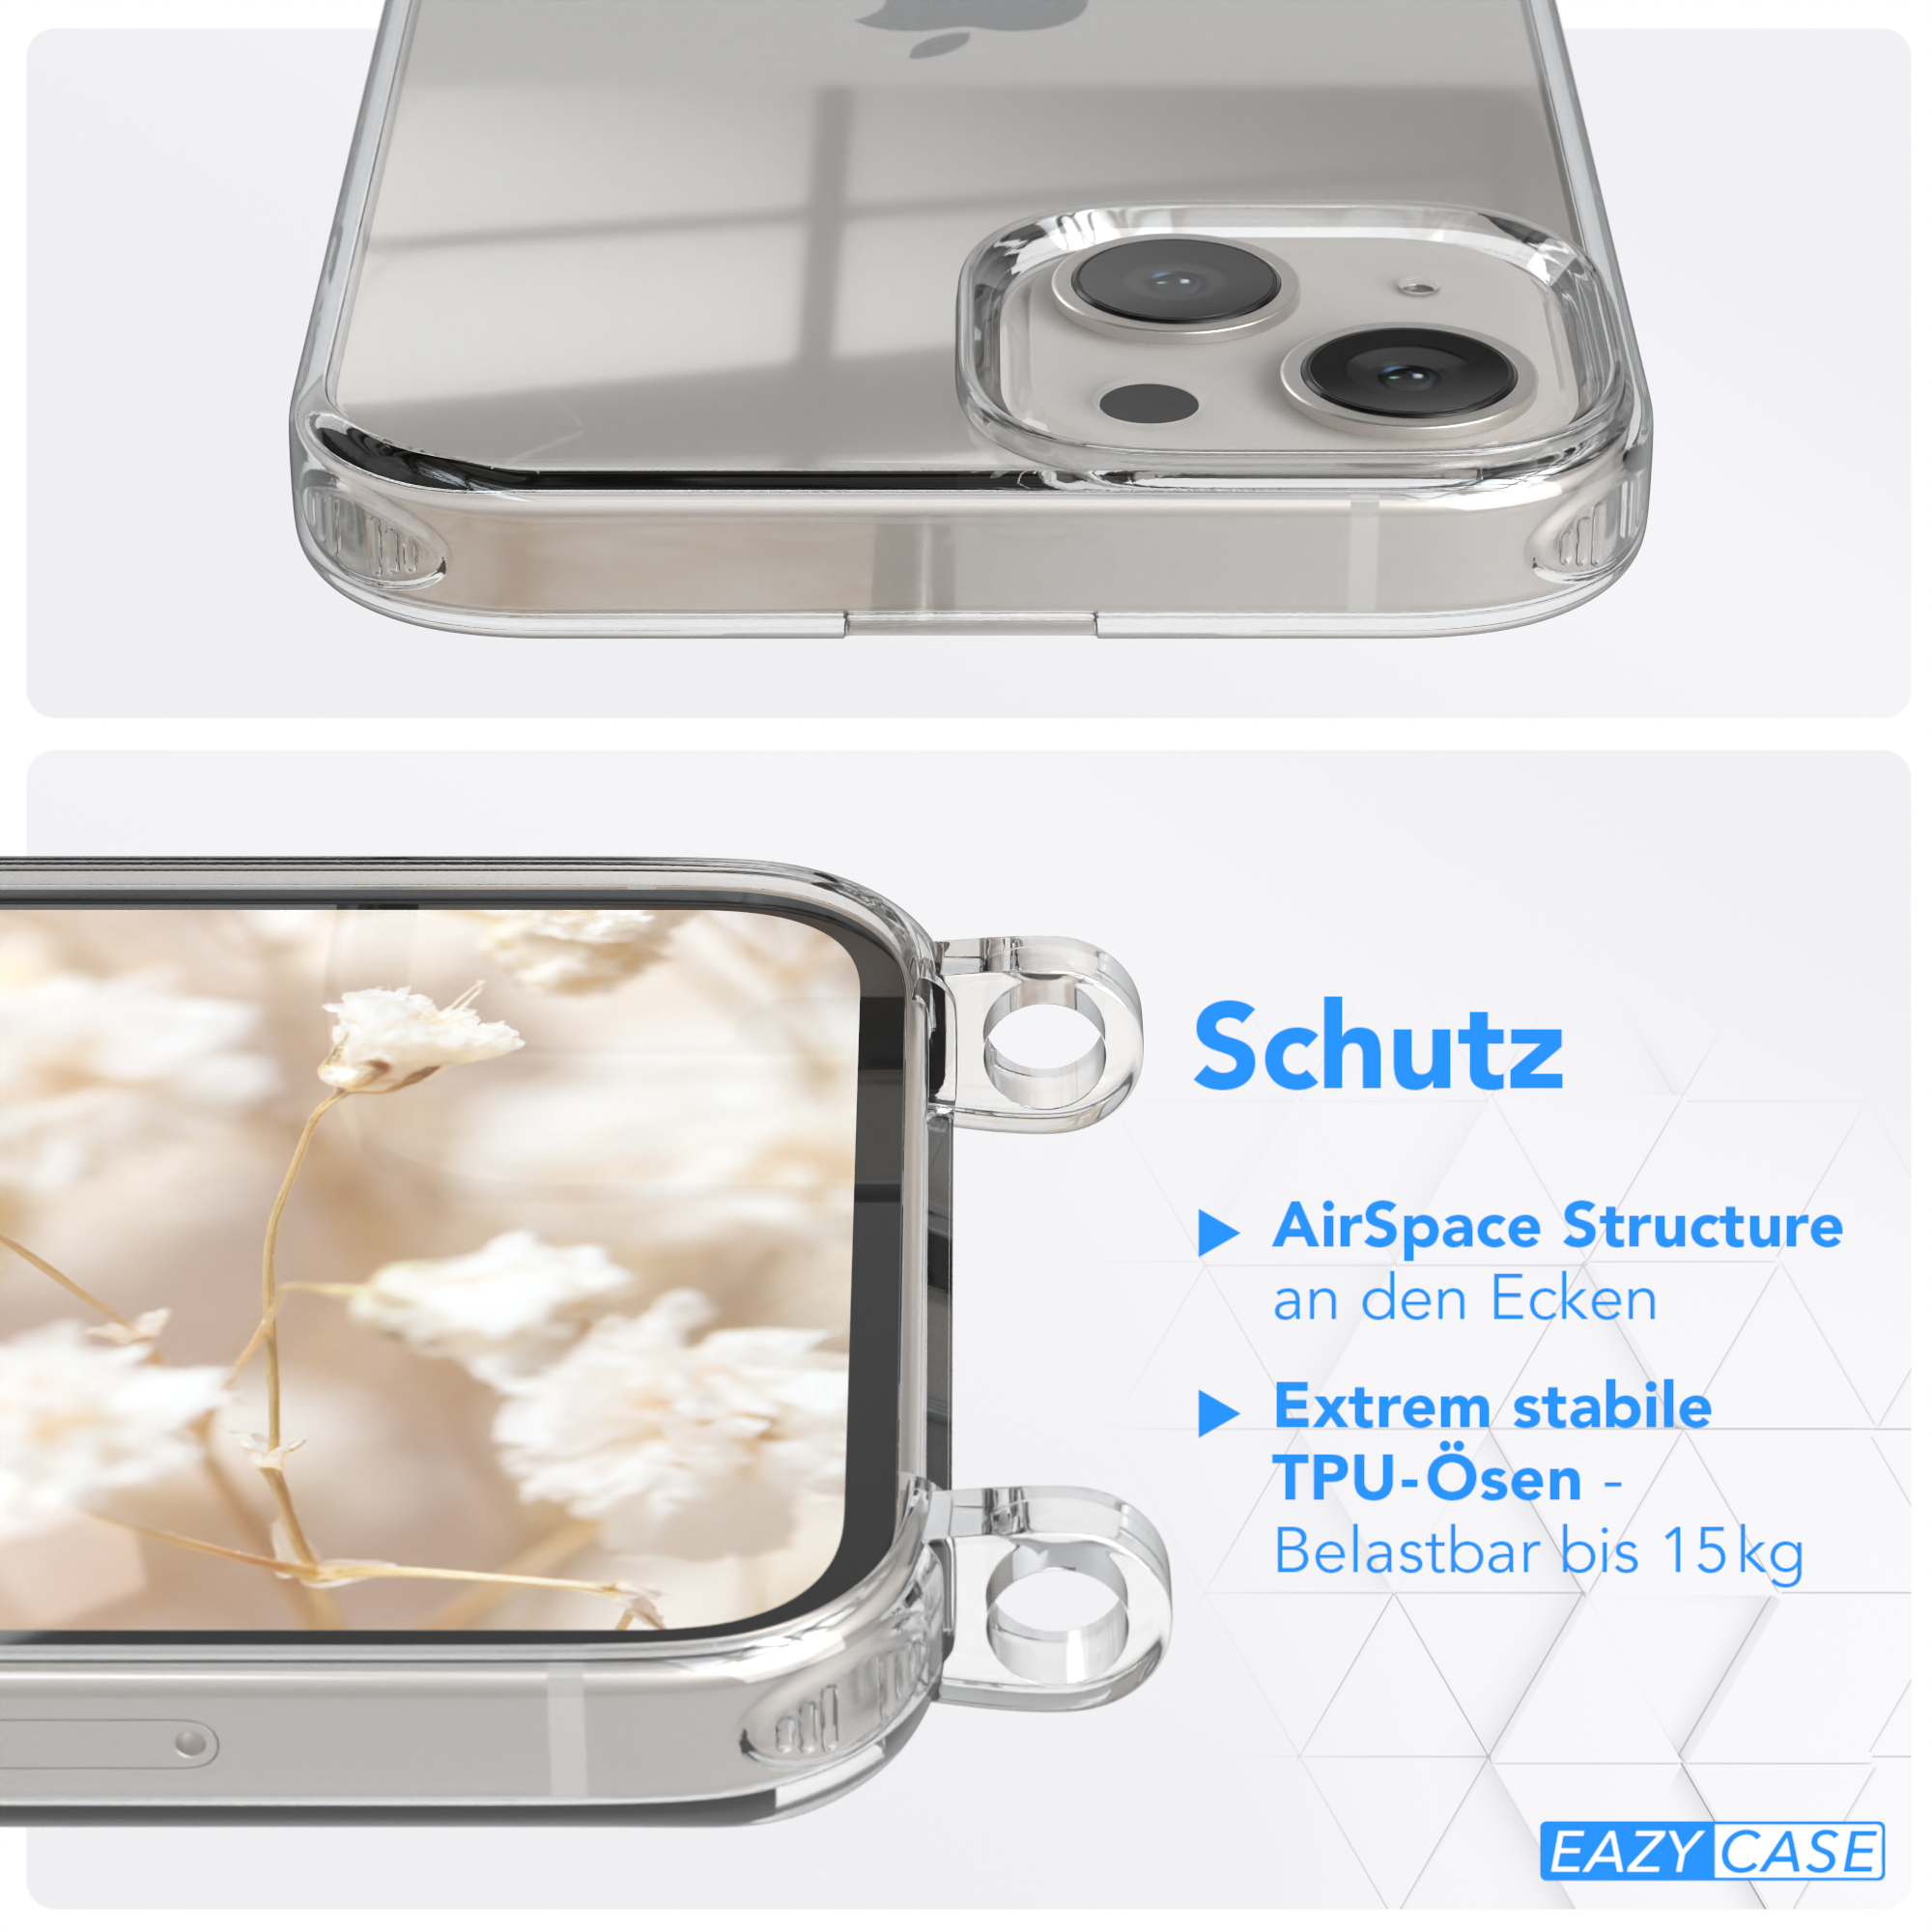 CASE Apple, mit Kordel 13, Grau / EAZY Schwarz Umhängetasche, Transparente Style, Boho Handyhülle iPhone